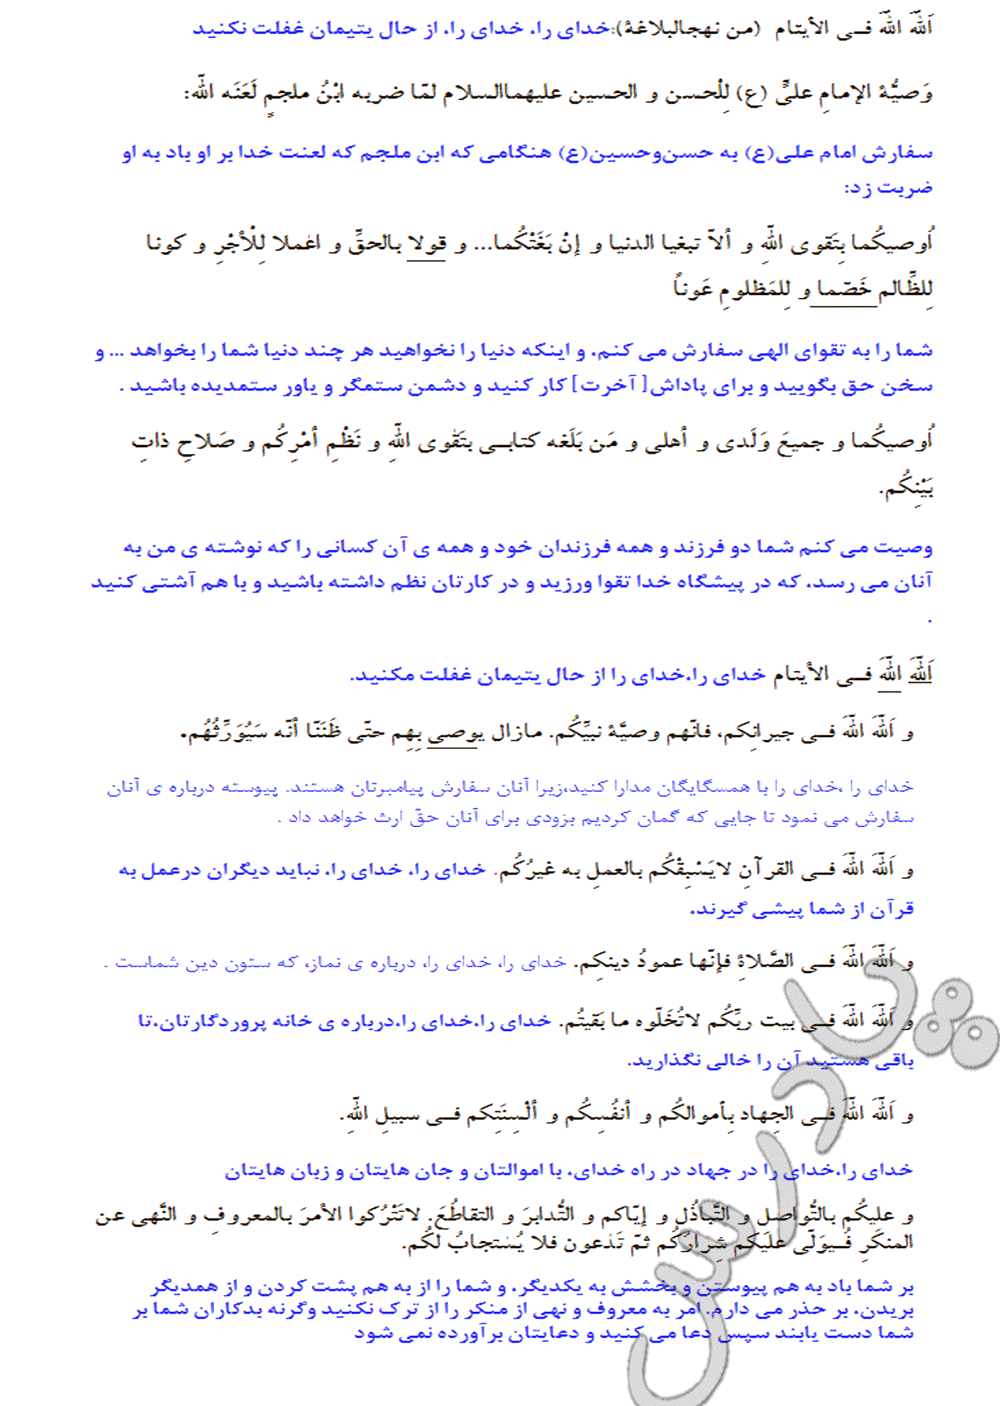 ترجمه درس9 عربی پیش دانشگاهی انسانی